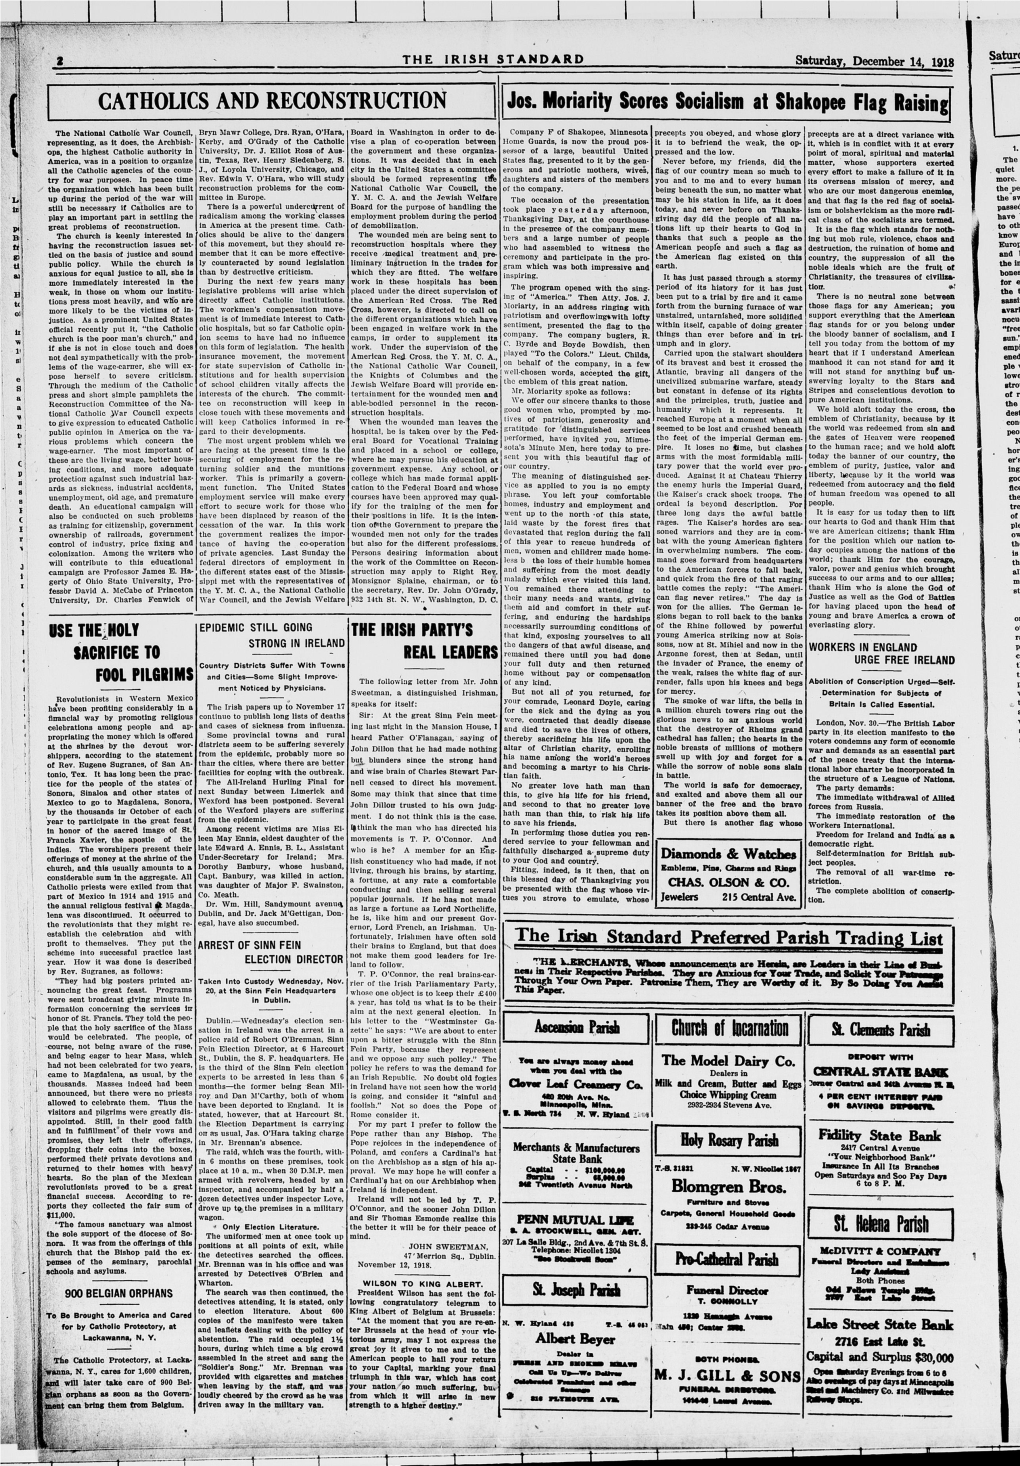 The Irish Standard. (Minneapolis, Minn. ; St. Paul, Minn.), 1918-12-14